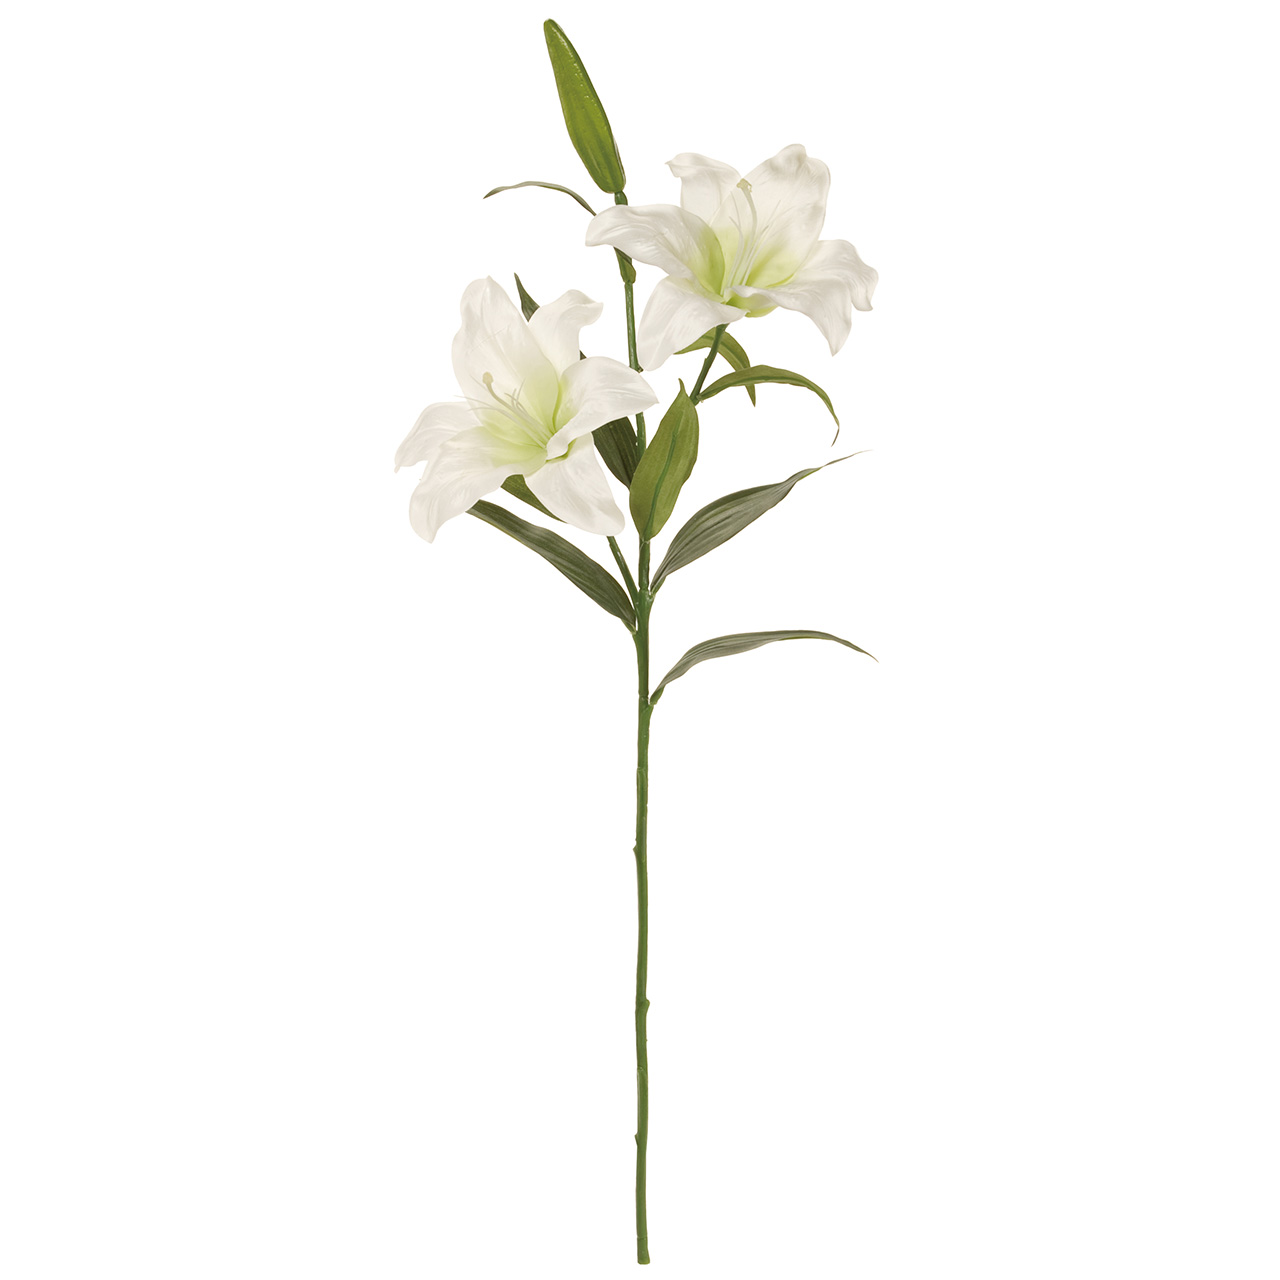 マイフラ 通販 Magiq クレセント カサブランカ ホワイト アーティフィシャルフラワー 造花 Fm0099 ユリ 花径 約 全長 約87cm ホワイト Magiq アーティフィシャルフラワー 造花 全国にmagiq 花器 花資材などをお届けします